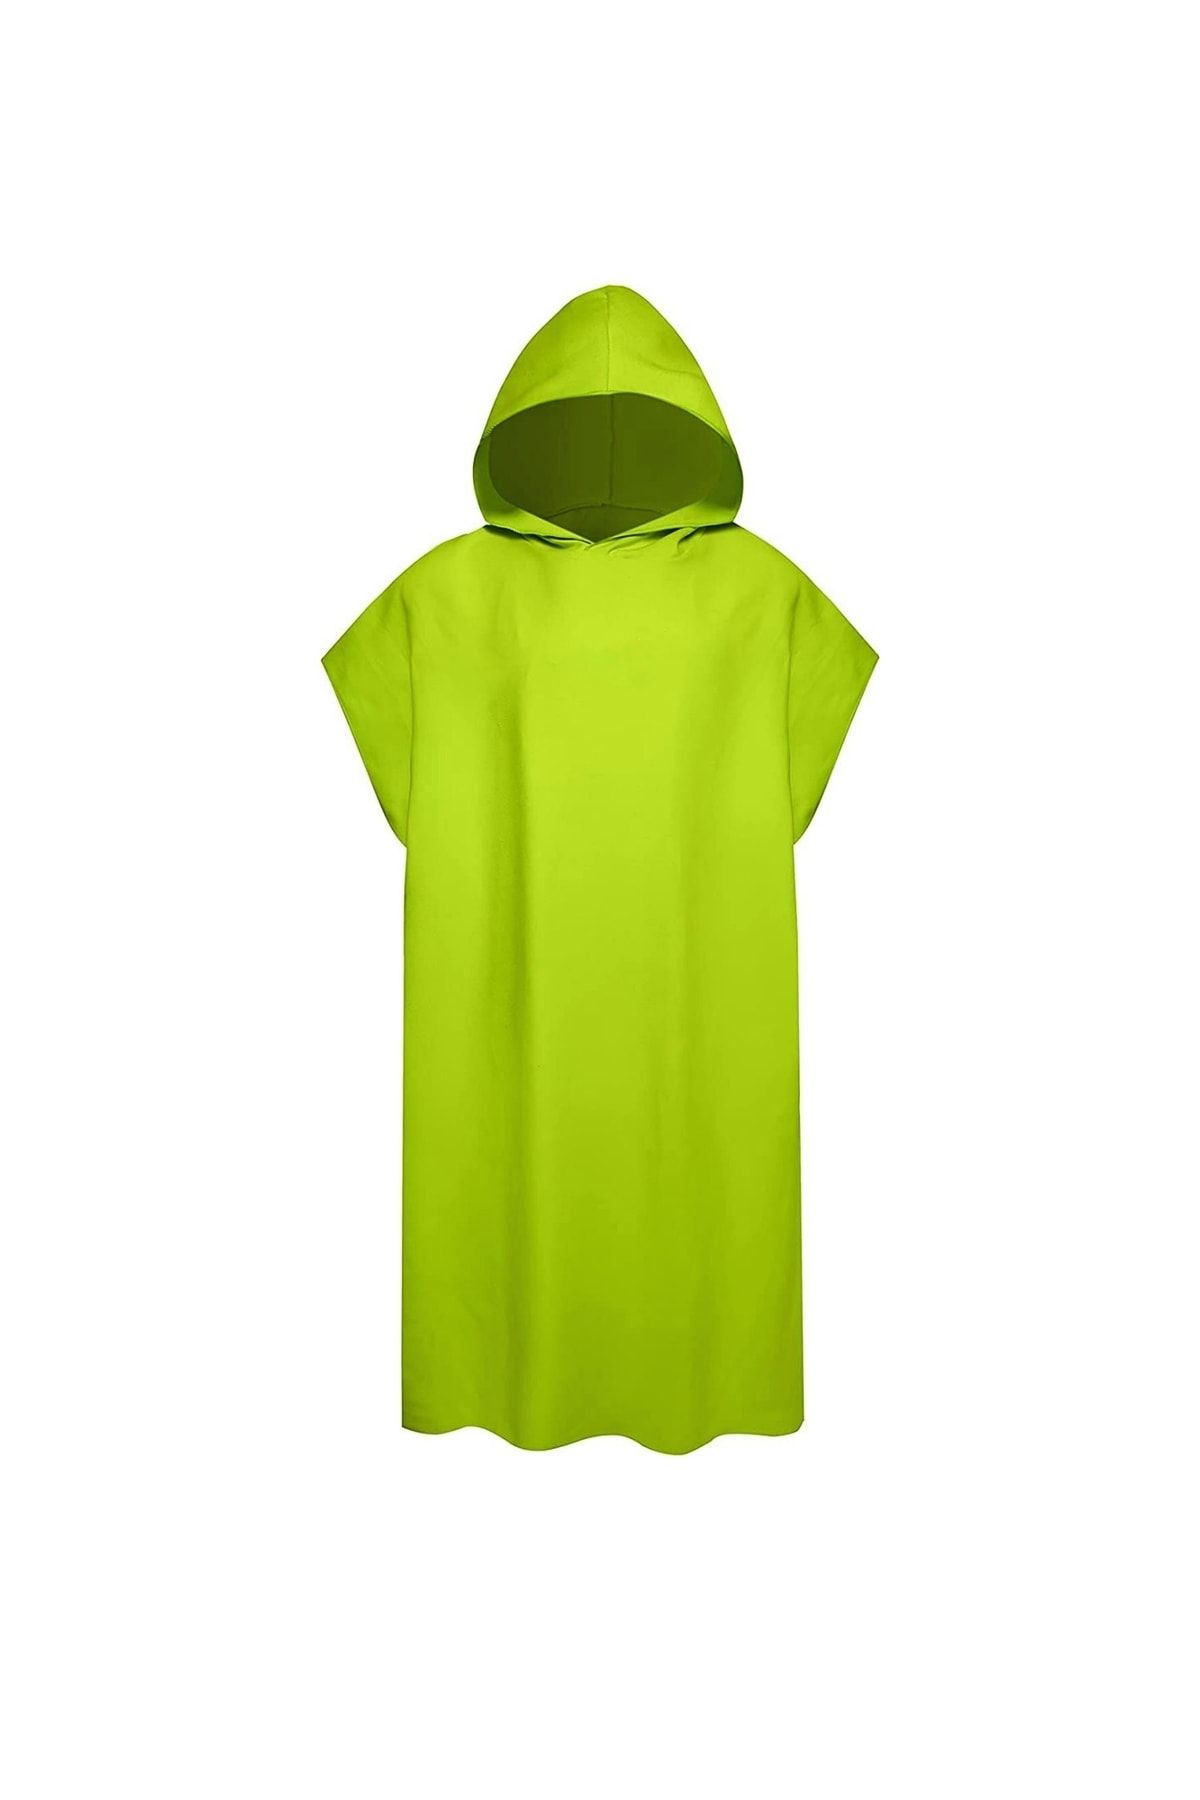 MORDRY Unisex Kapüşonlu Mikrofiber Surf Panço, Giyilebilir Havlu, Taşınabilir Kabin, Yeşil